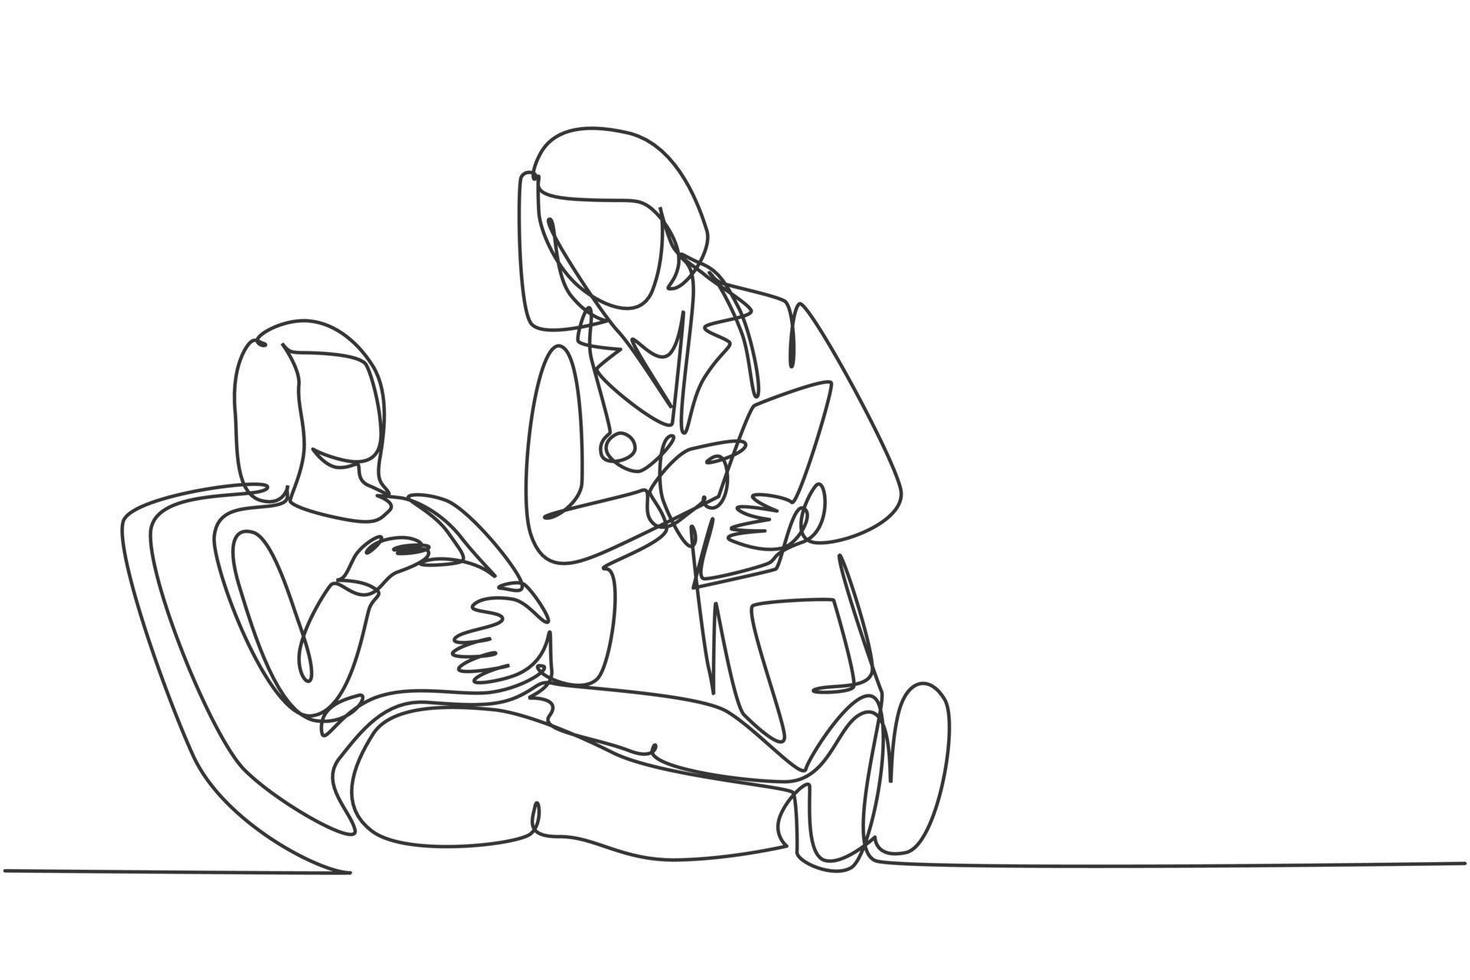 en enda linjeteckning av kvinnlig obstetrik och gynekologläkare som pratar med patienten och förklarar livmoderns tillstånd. gravid hälsovård koncept kontinuerlig linje rita design vektor illustration